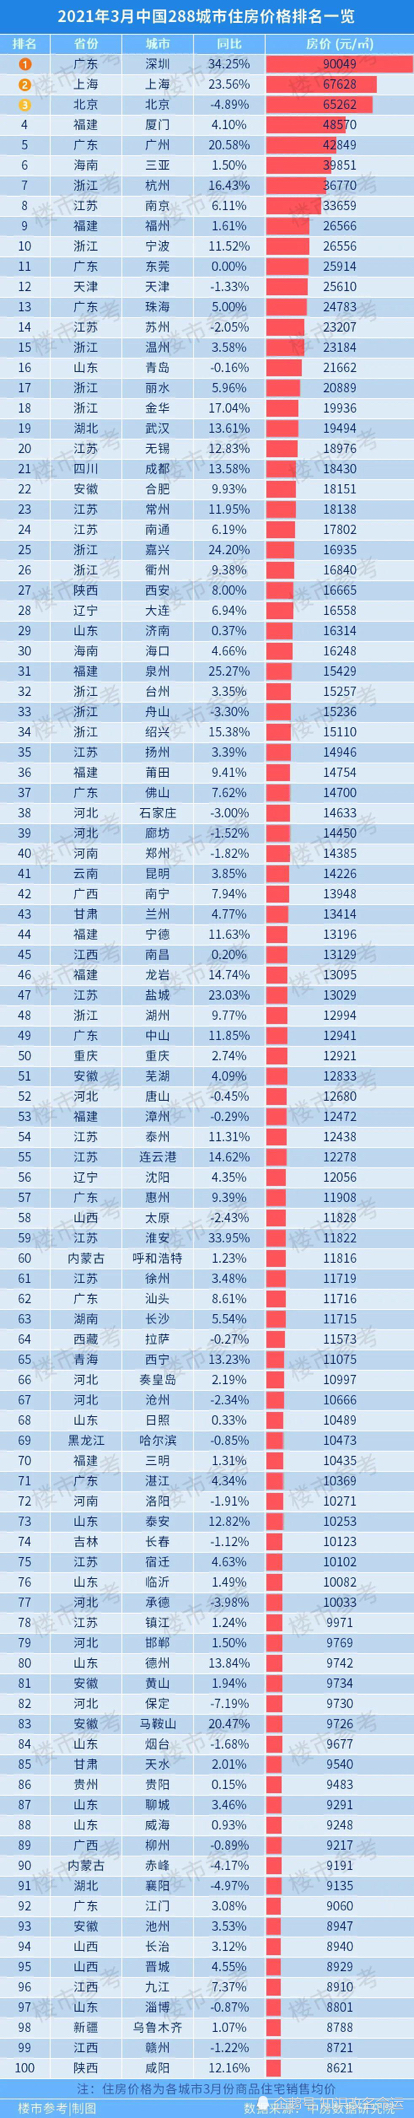 中国房价排行_最新中国百城房价排行榜正式公布